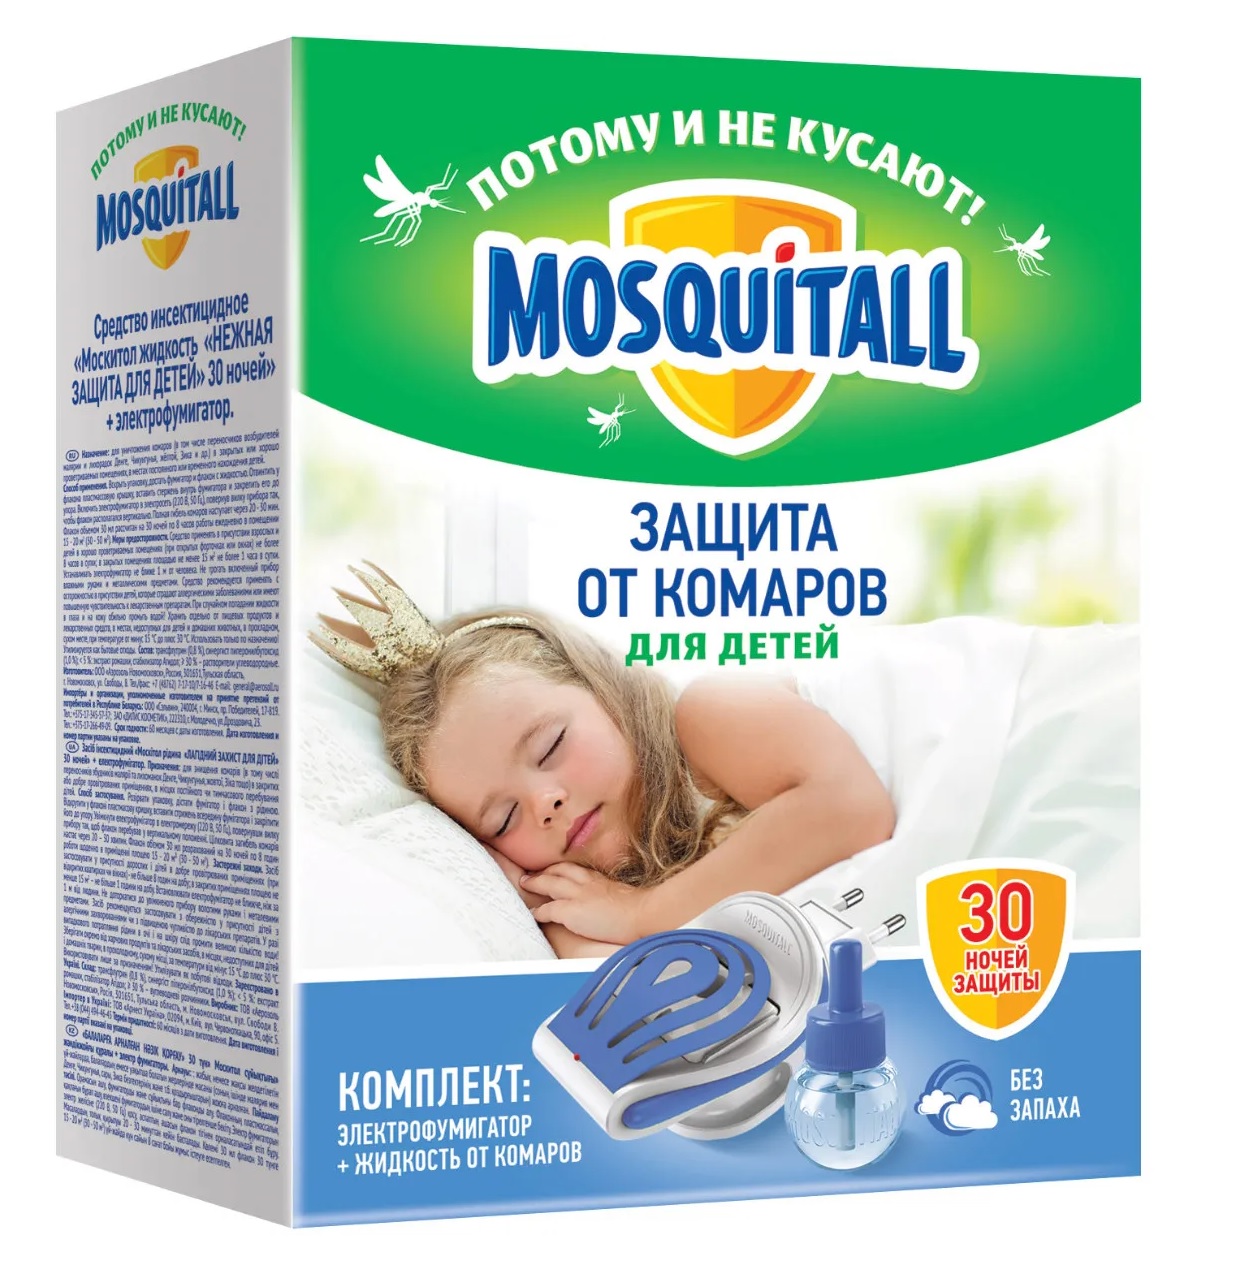 Комплект Mosquitall Нежная защита для детей: электрофумигатор + жидкость 30 ночей от комаров 30 мл